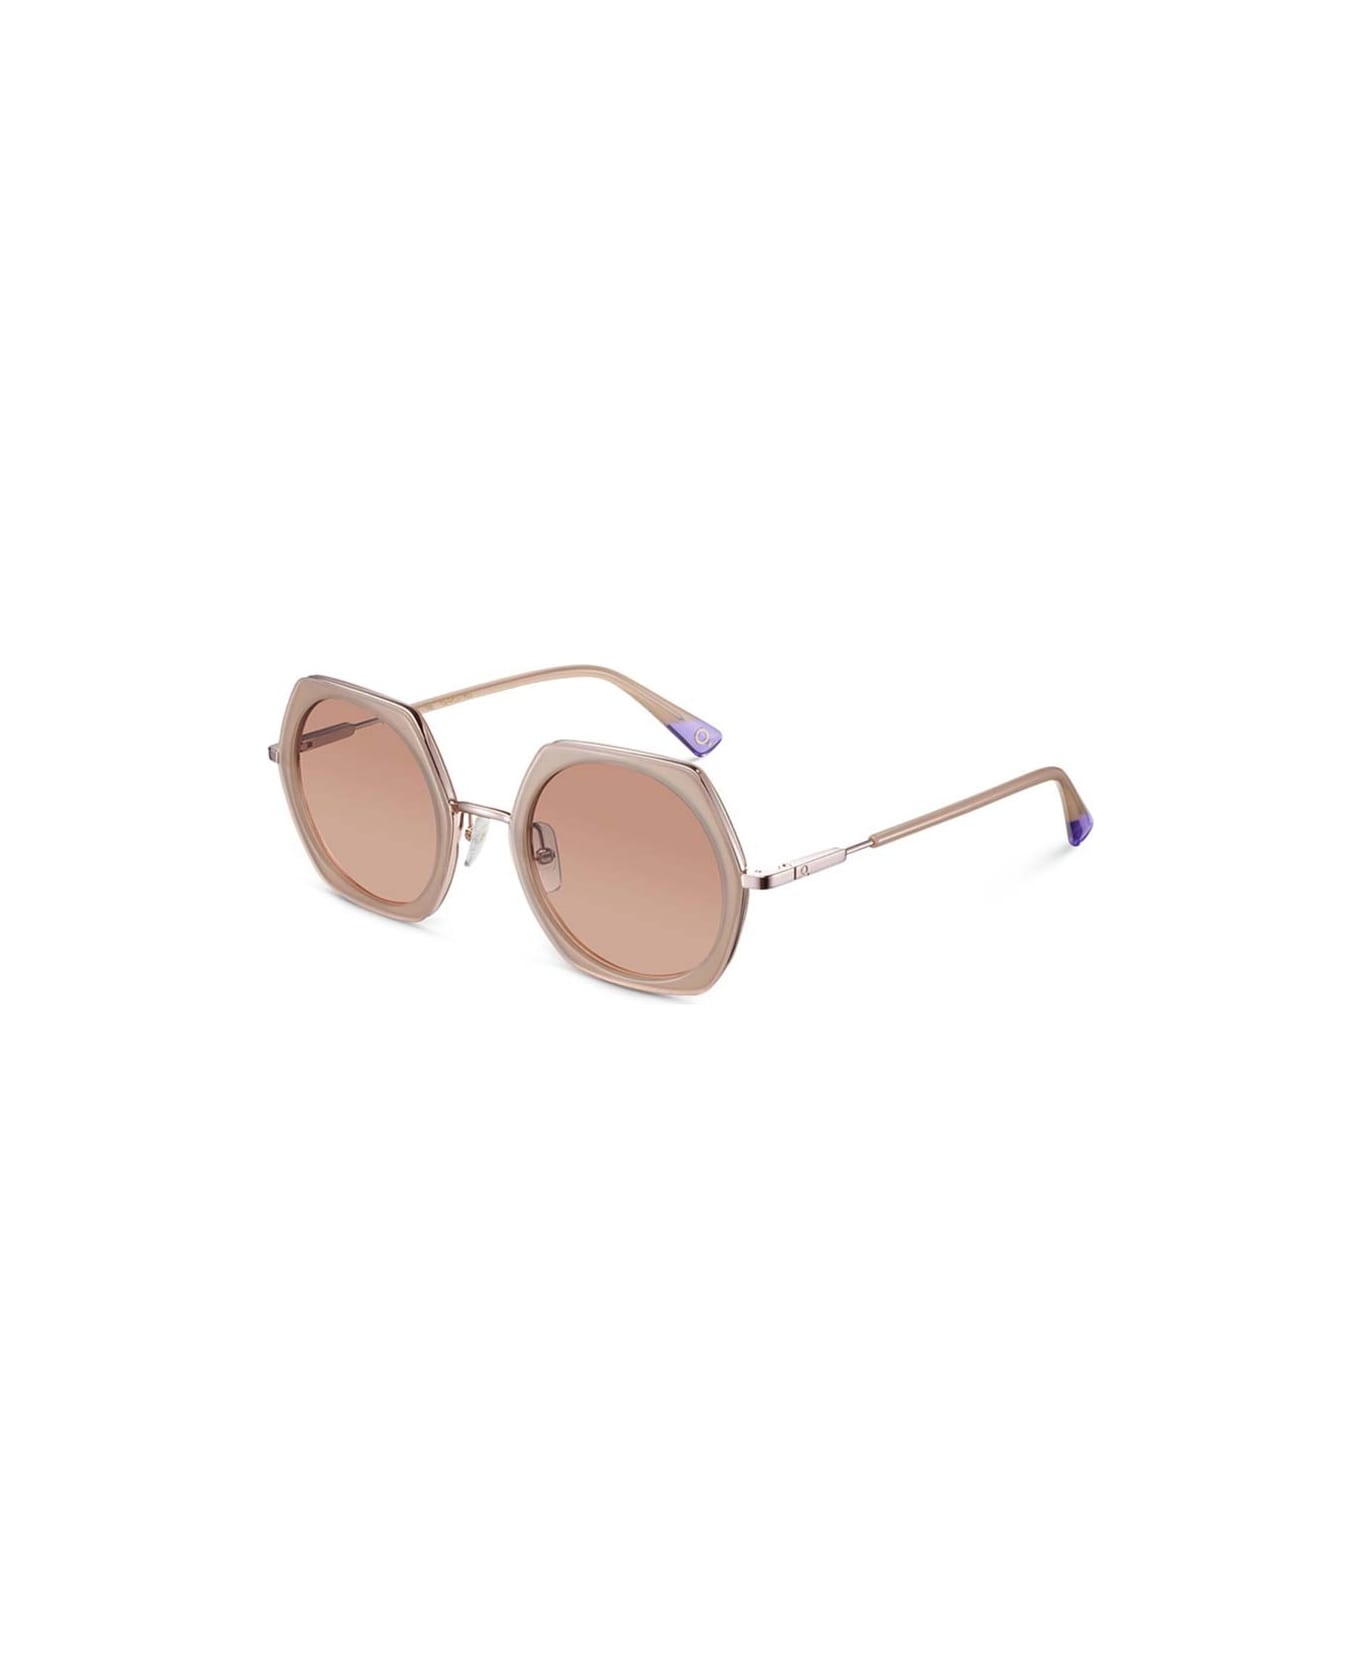 Etnia Barcelona Sunglasses - Cipria/Marrone